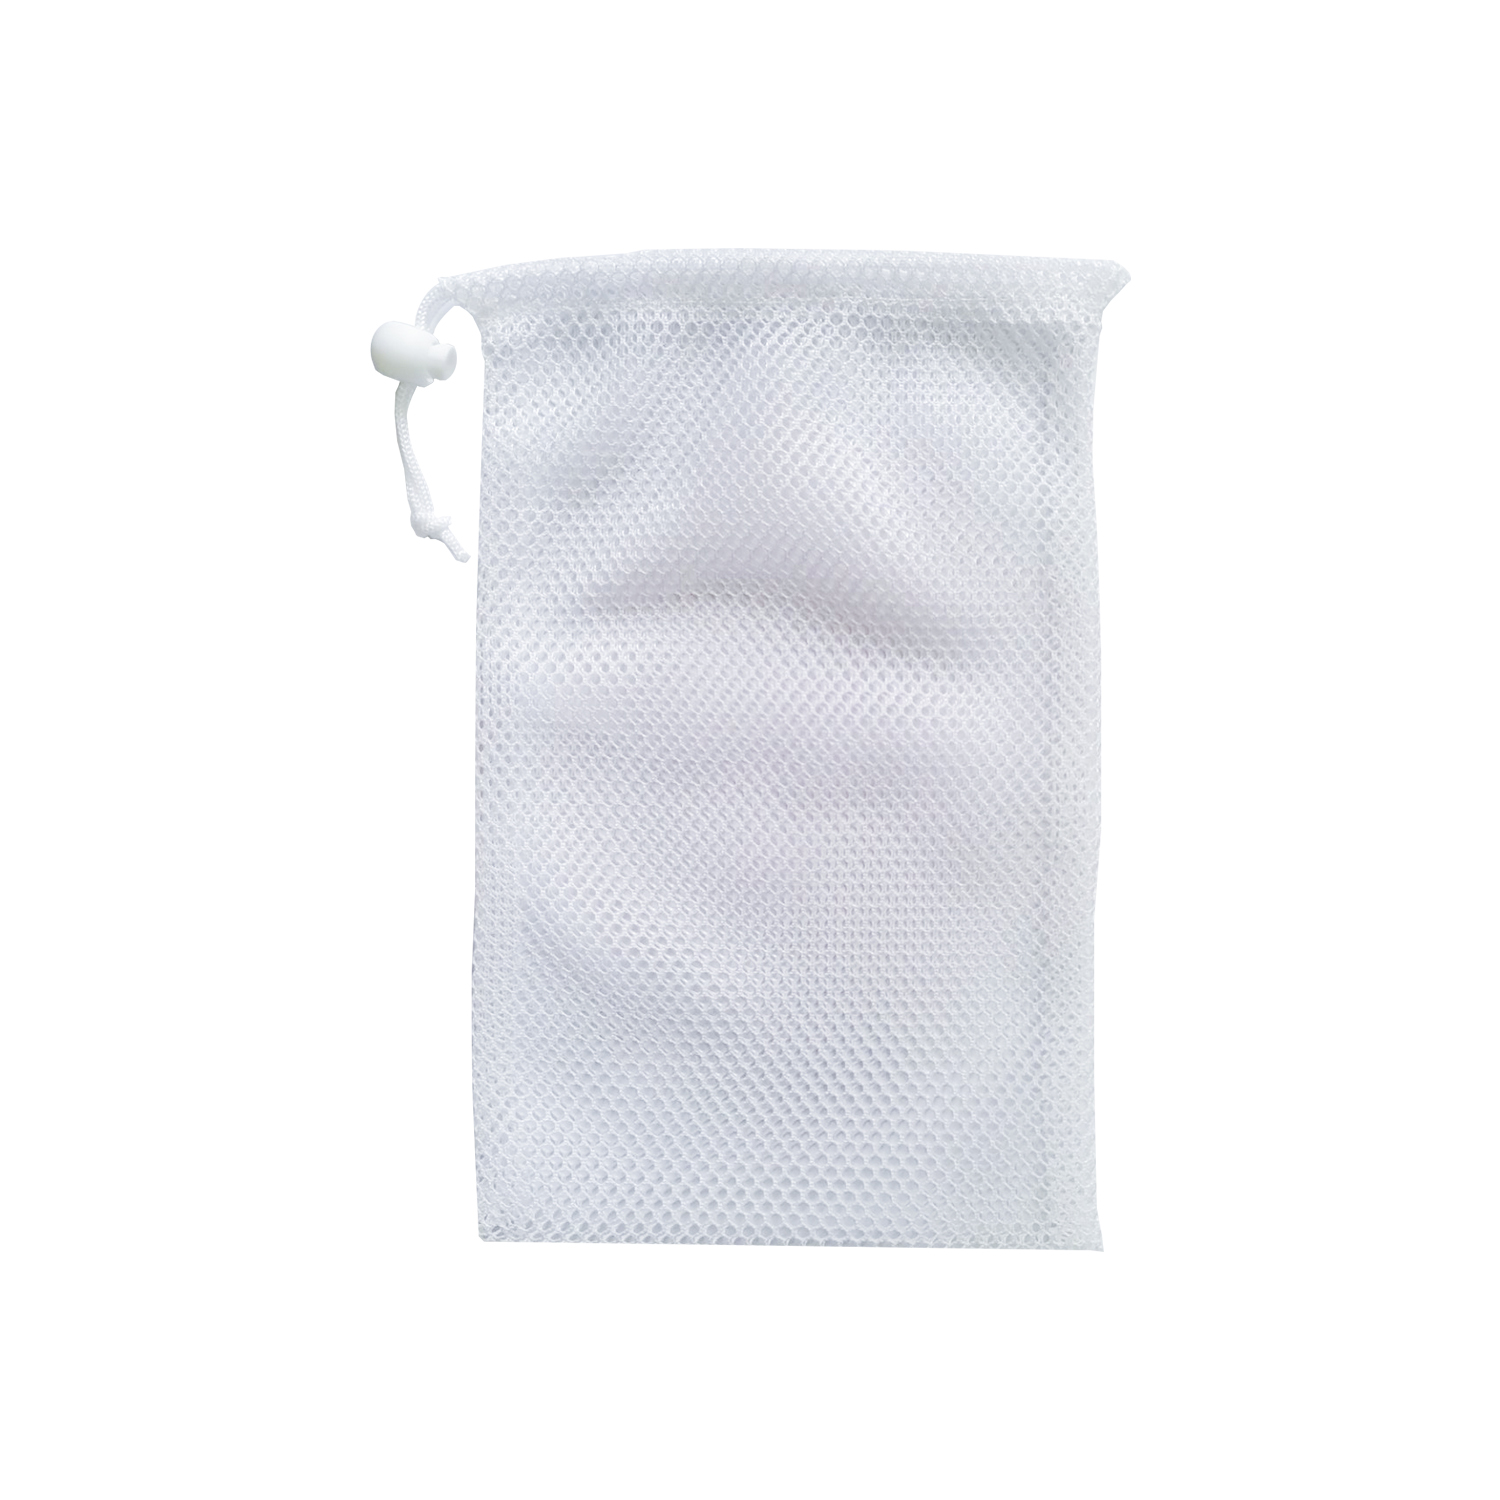 阿里1号店-日用品白色网格束口袋12